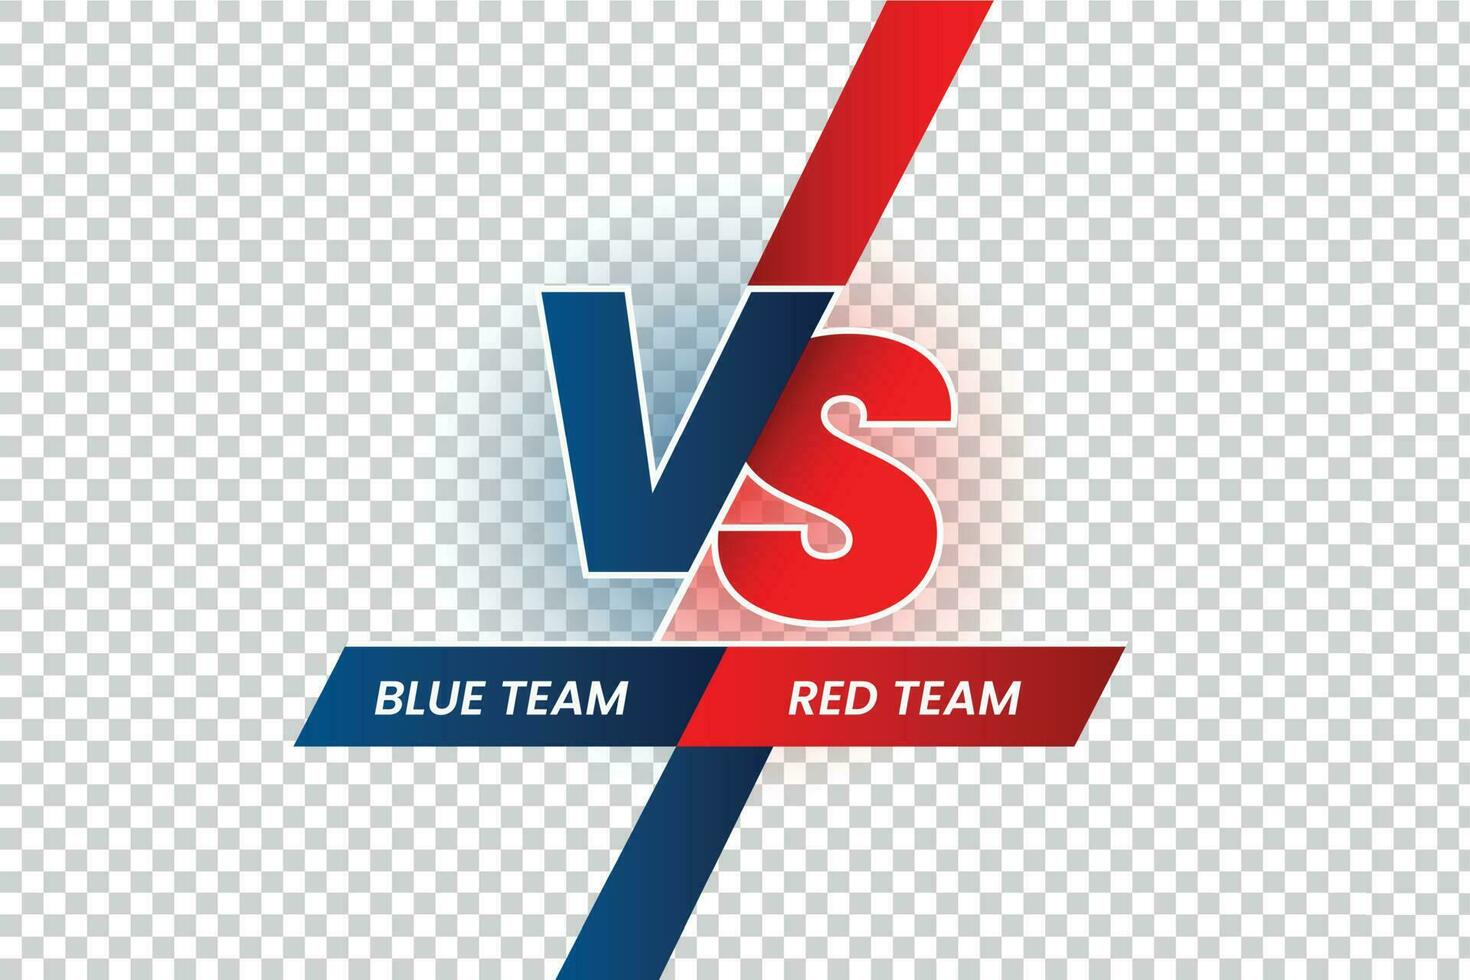 contro duello titolo. battaglia rosso vs blu squadra telaio, gioco incontro concorrenza e squadre confronto isolato vettore illustrazione